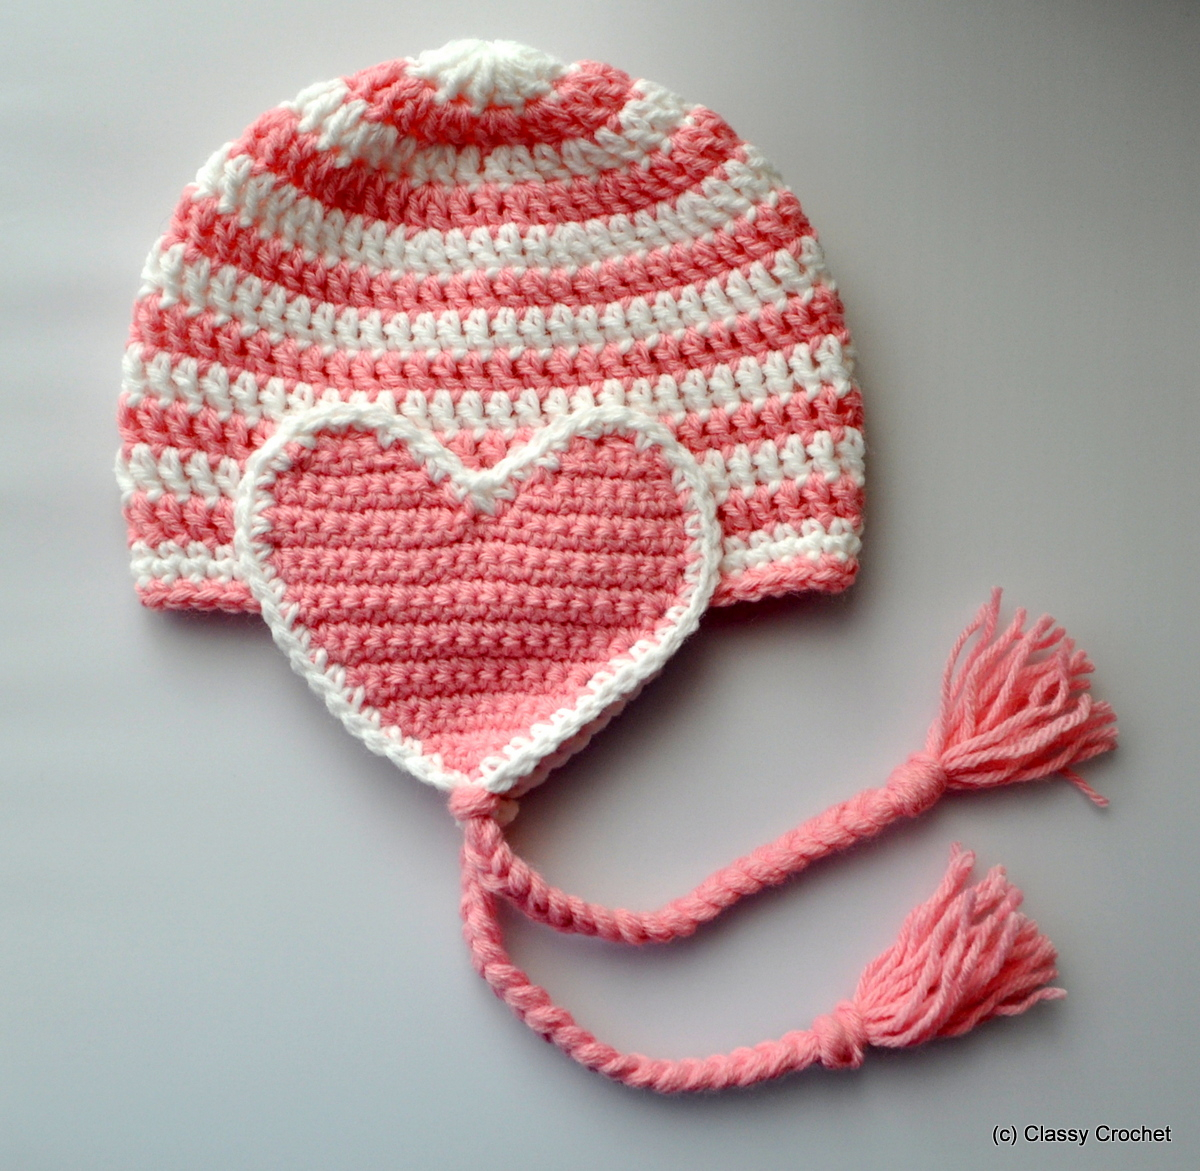 Crochet Hat With Ears Pattern Free Pattern Crochet Valentine Heart Earflap Hat Classy Crochet